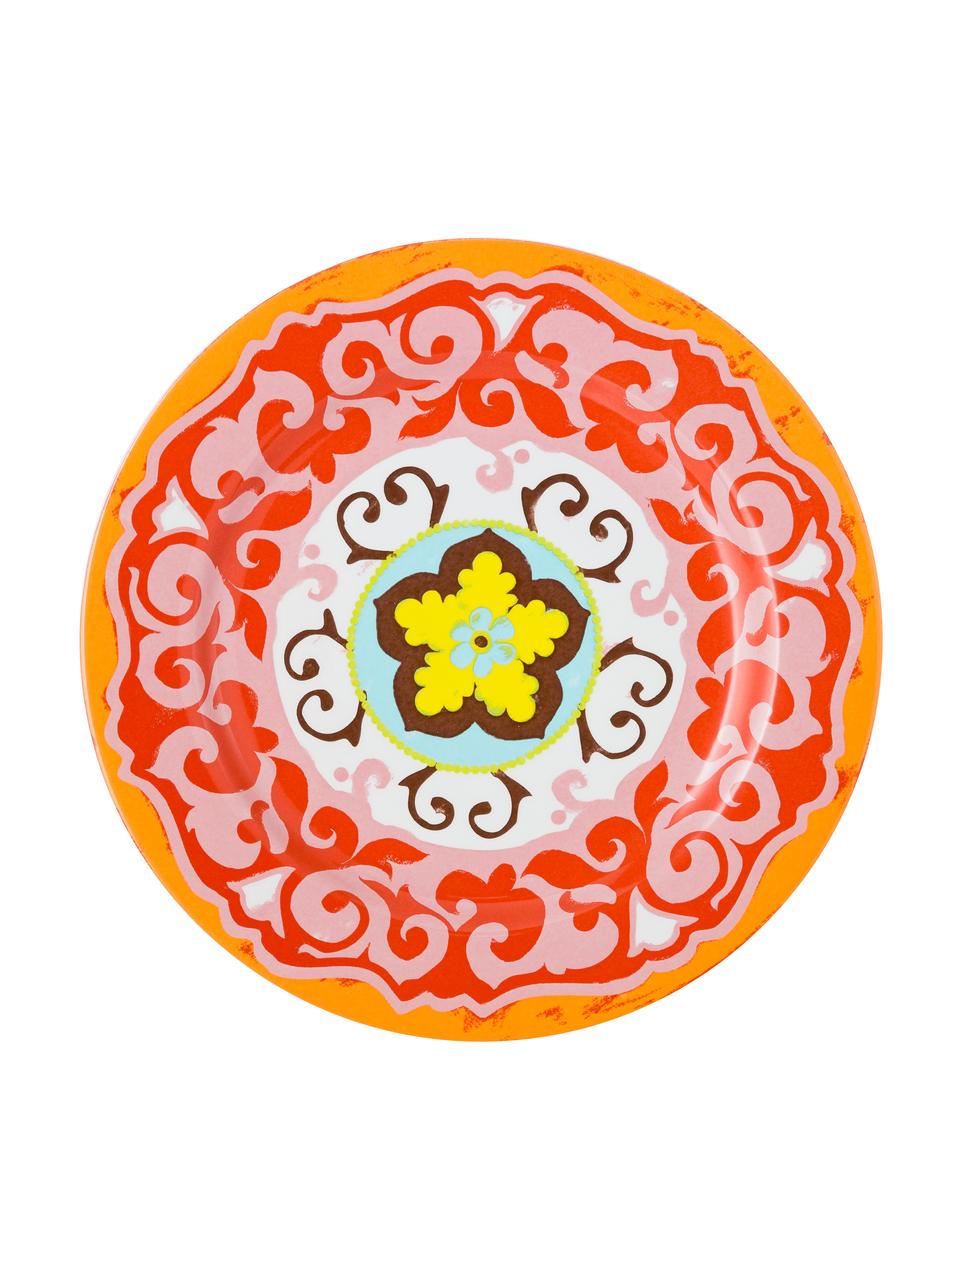 Dinerbordenset Nador met gekleurd patroon, 6-delig, Keramiek, Multicolour, Ø 27 cm